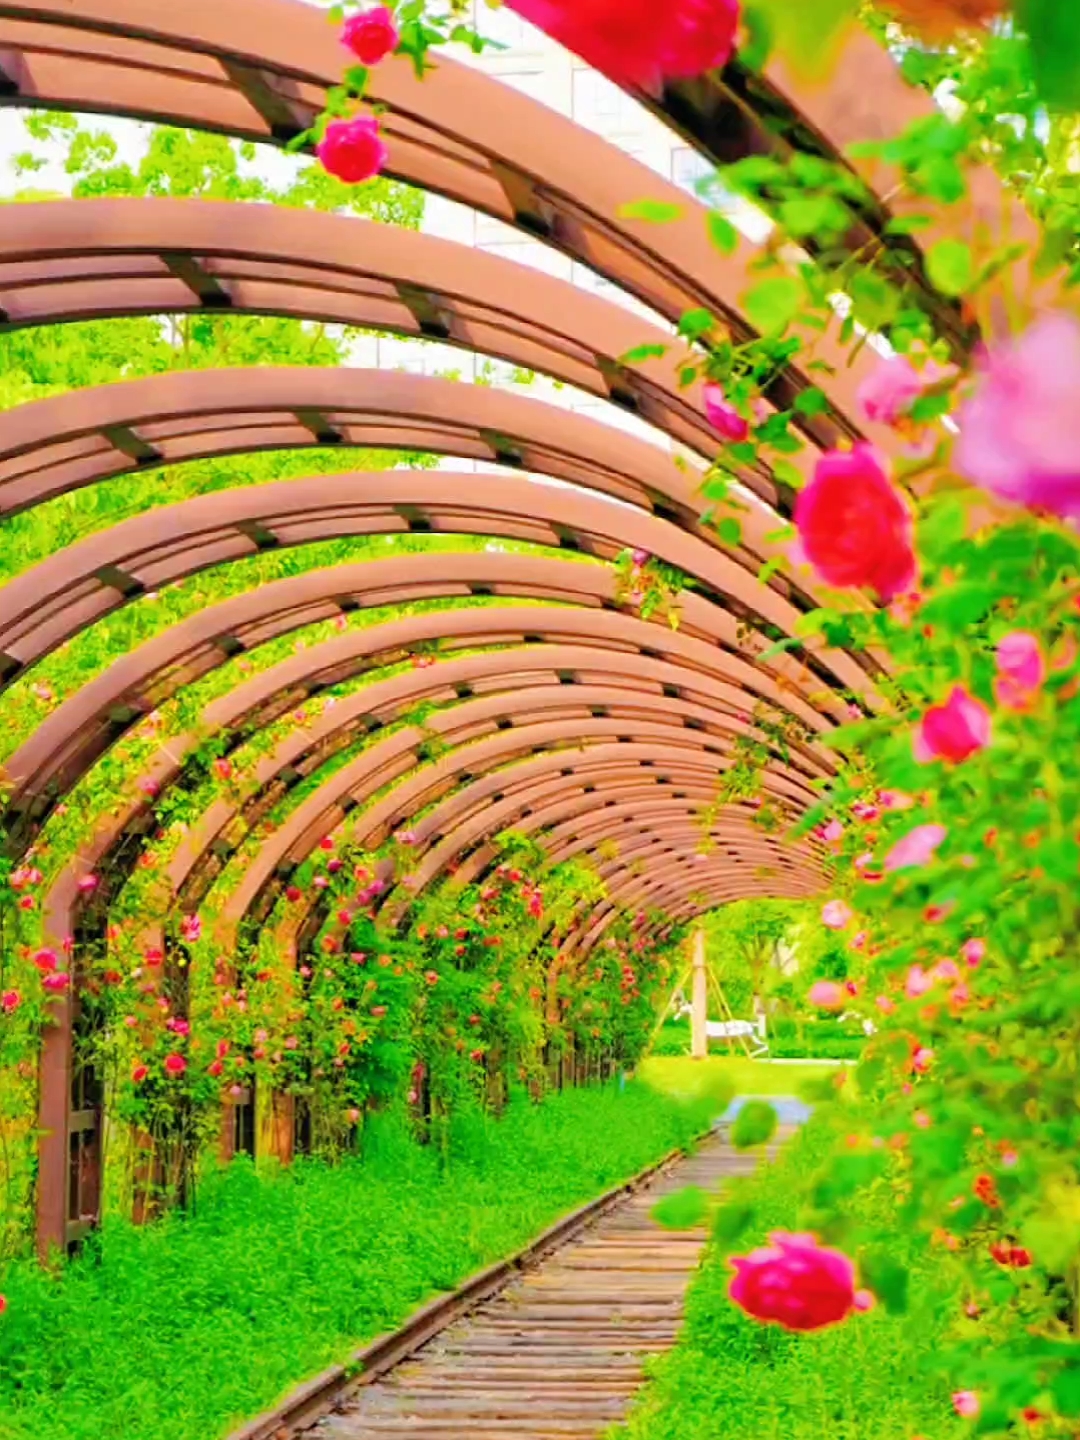 惊呆了·合肥这条蔷薇时光隧道太美了吧